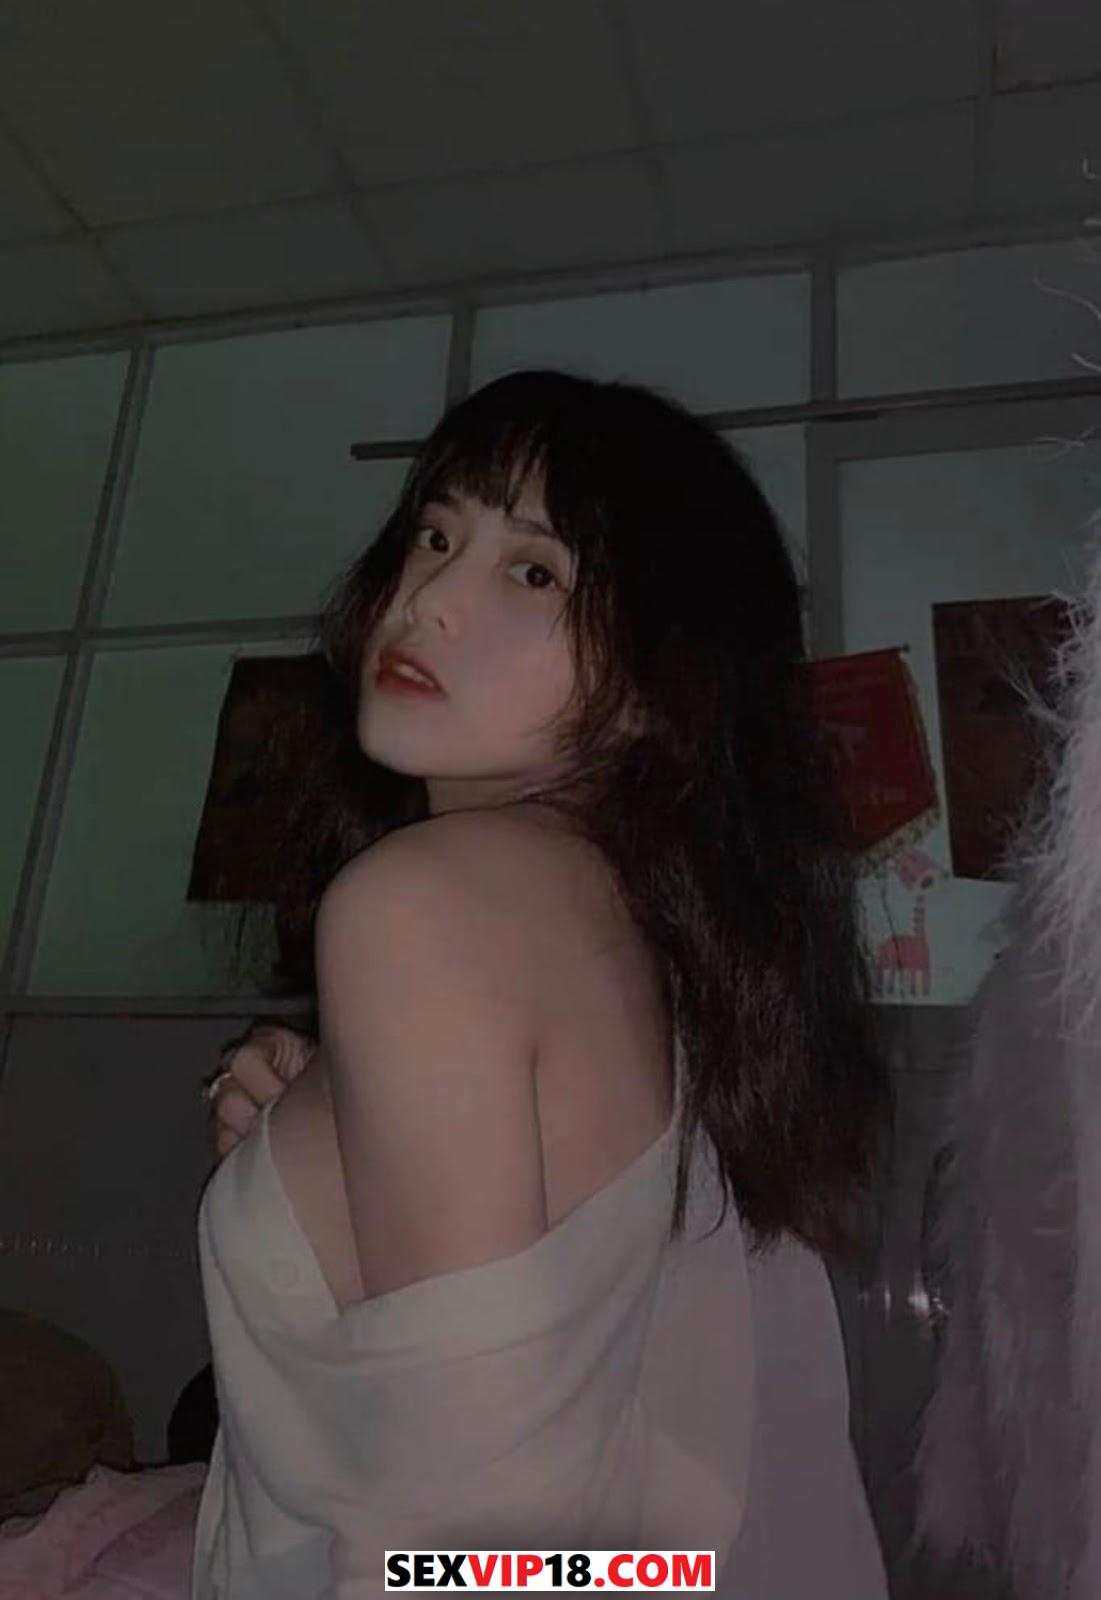 Ảnh sex gái xinh Trần Thư 1999